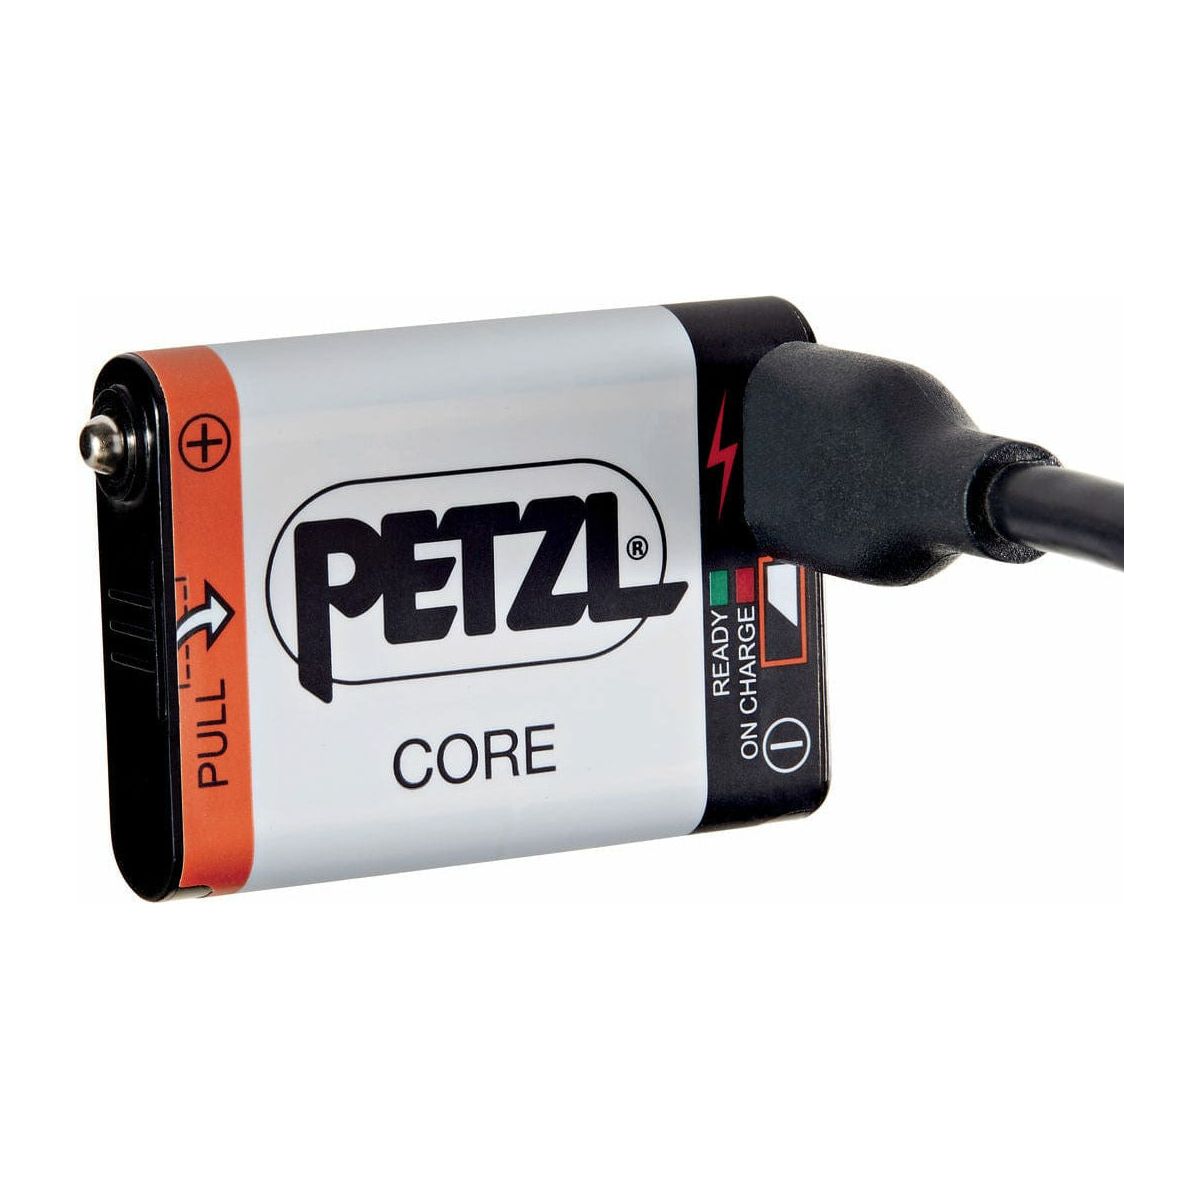 Baterija Petzl accu core 1250mAh - Tikkina, Tikka, Zipka, Actik, Actik Core, Tactikka, Tactikka+